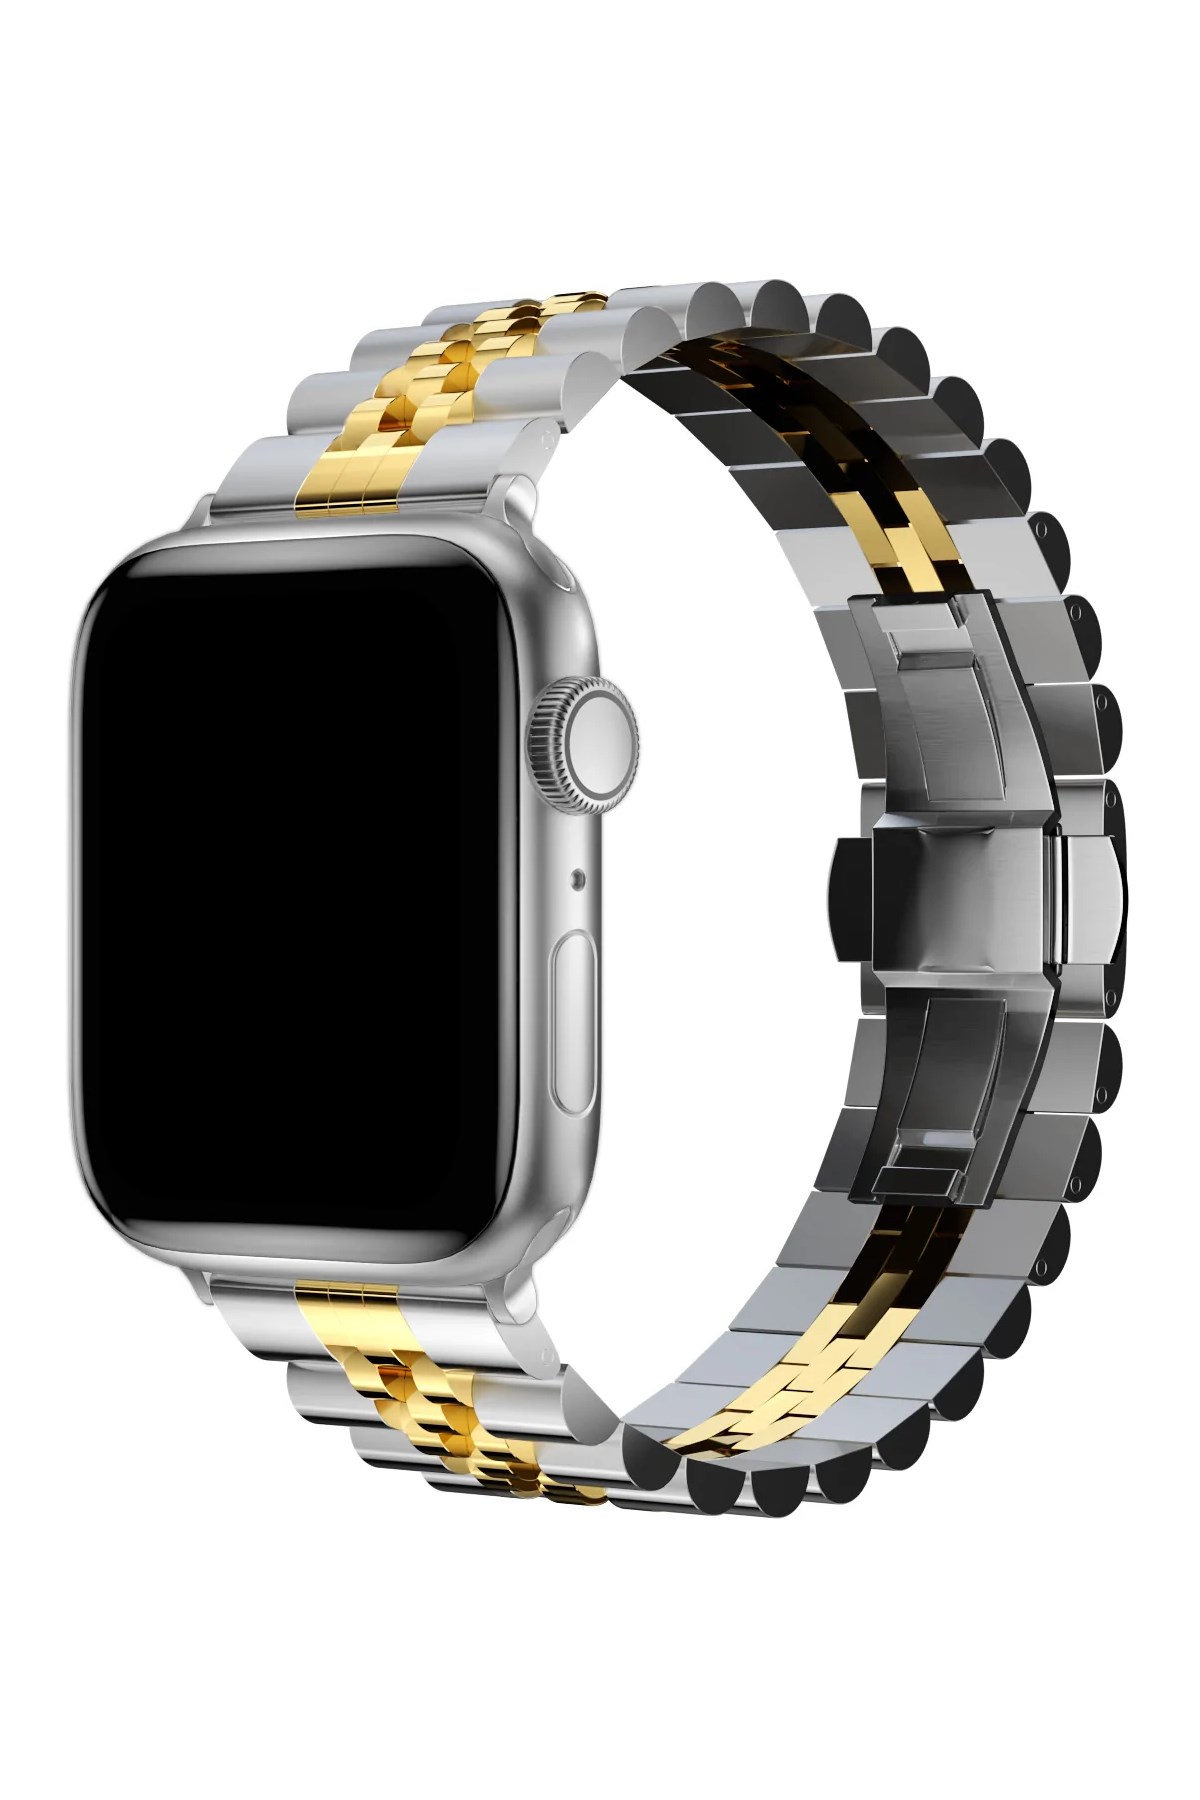 Apple Watch Saatleriniz İçin Daha İyisi Düşünülebilir Mi?